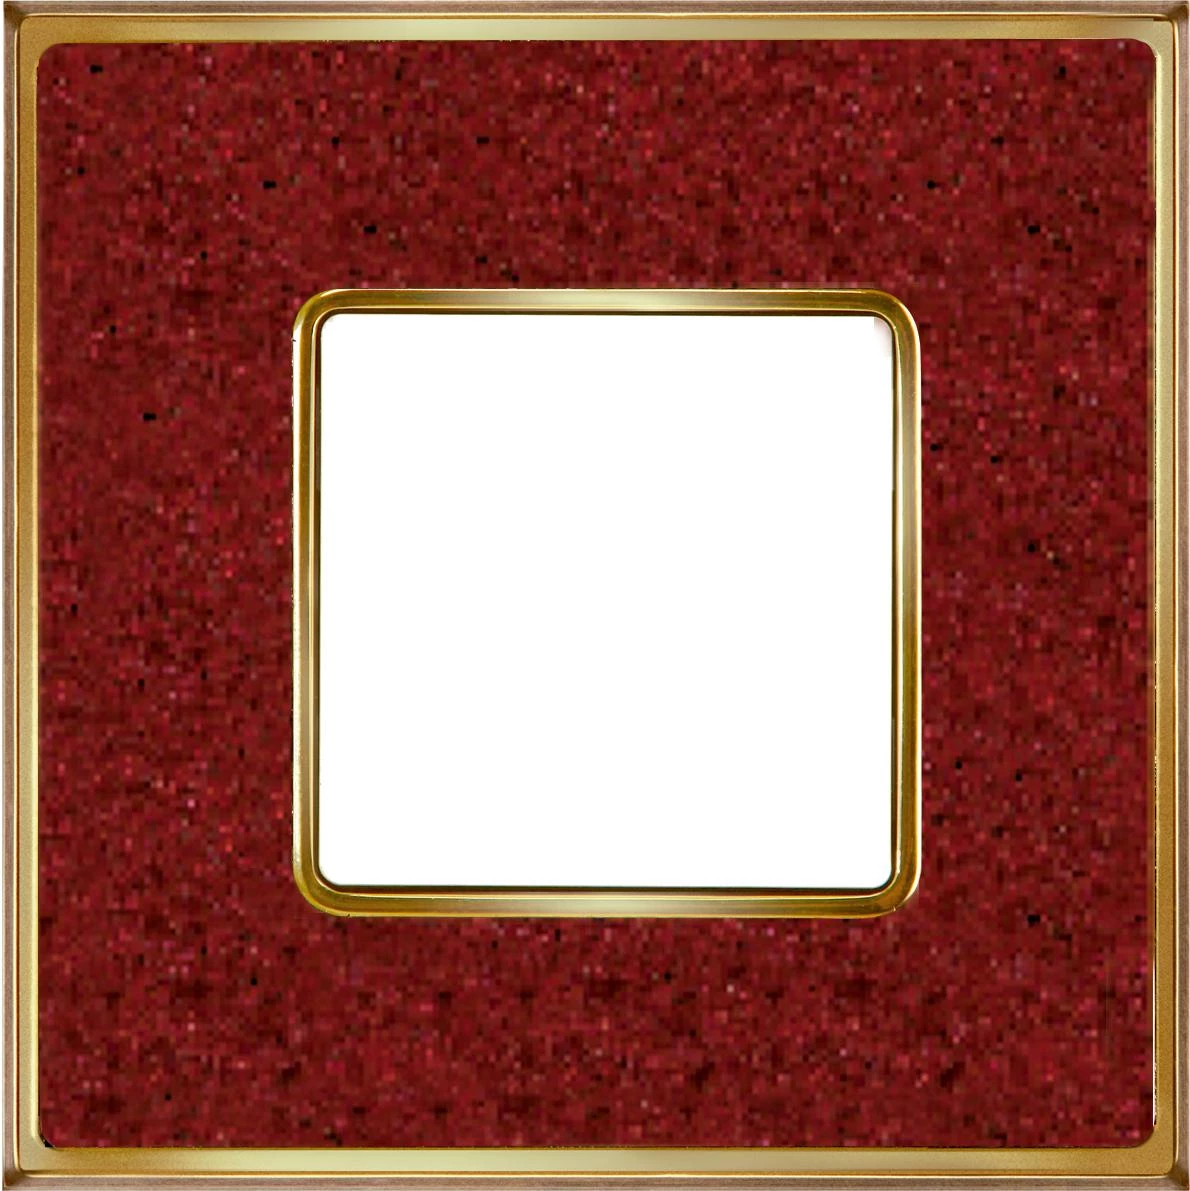  артикул FD01331PROB название Рамка одинарная, цвет Красный кориан/Светлое золото, VINTAGE CORINTO, Fede